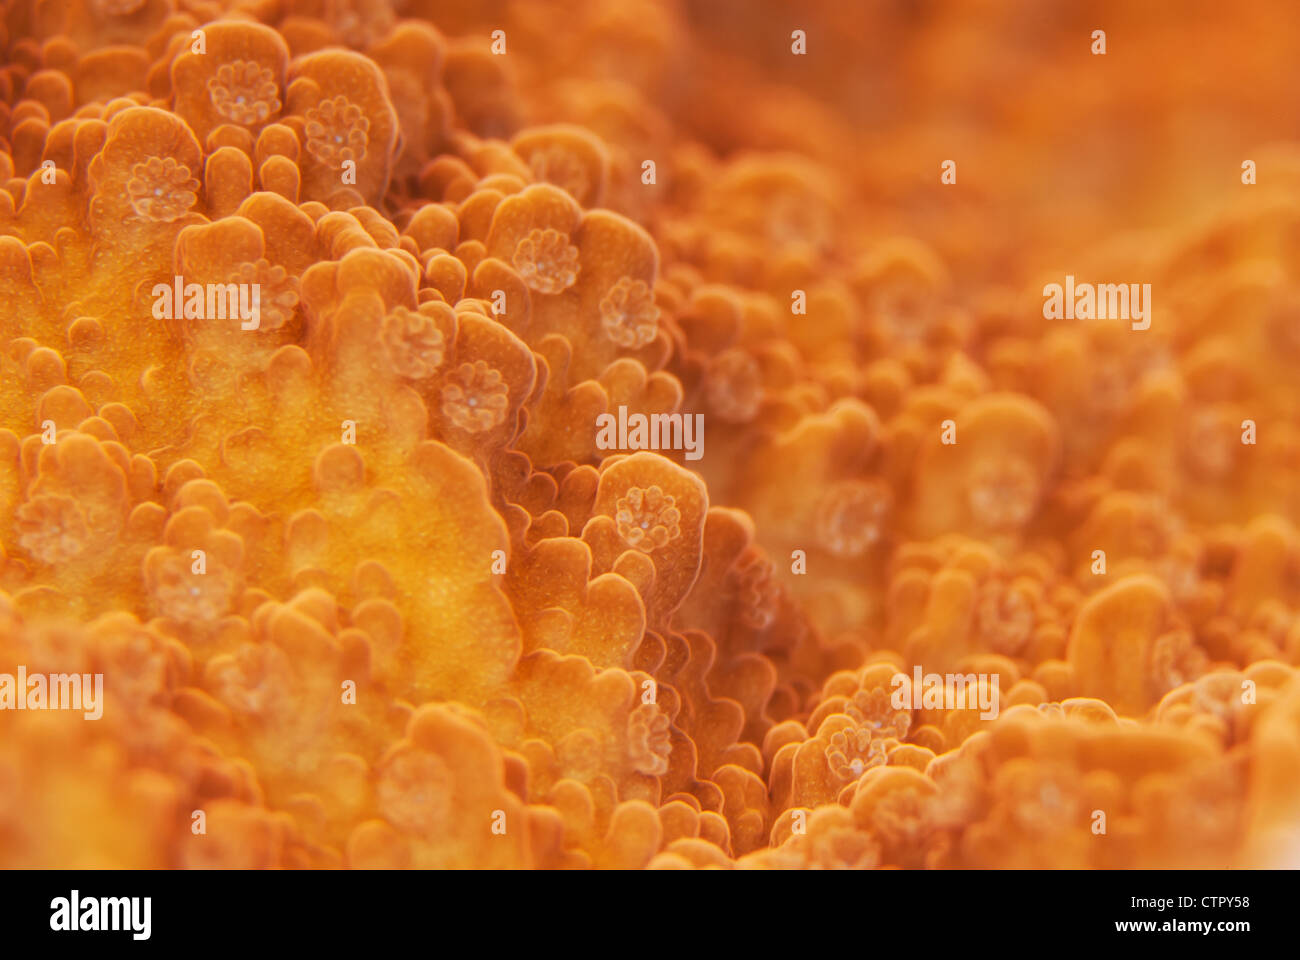 Dies ist eine Nahaufnahme Bild des harten Korallenpolypen. Stockfoto